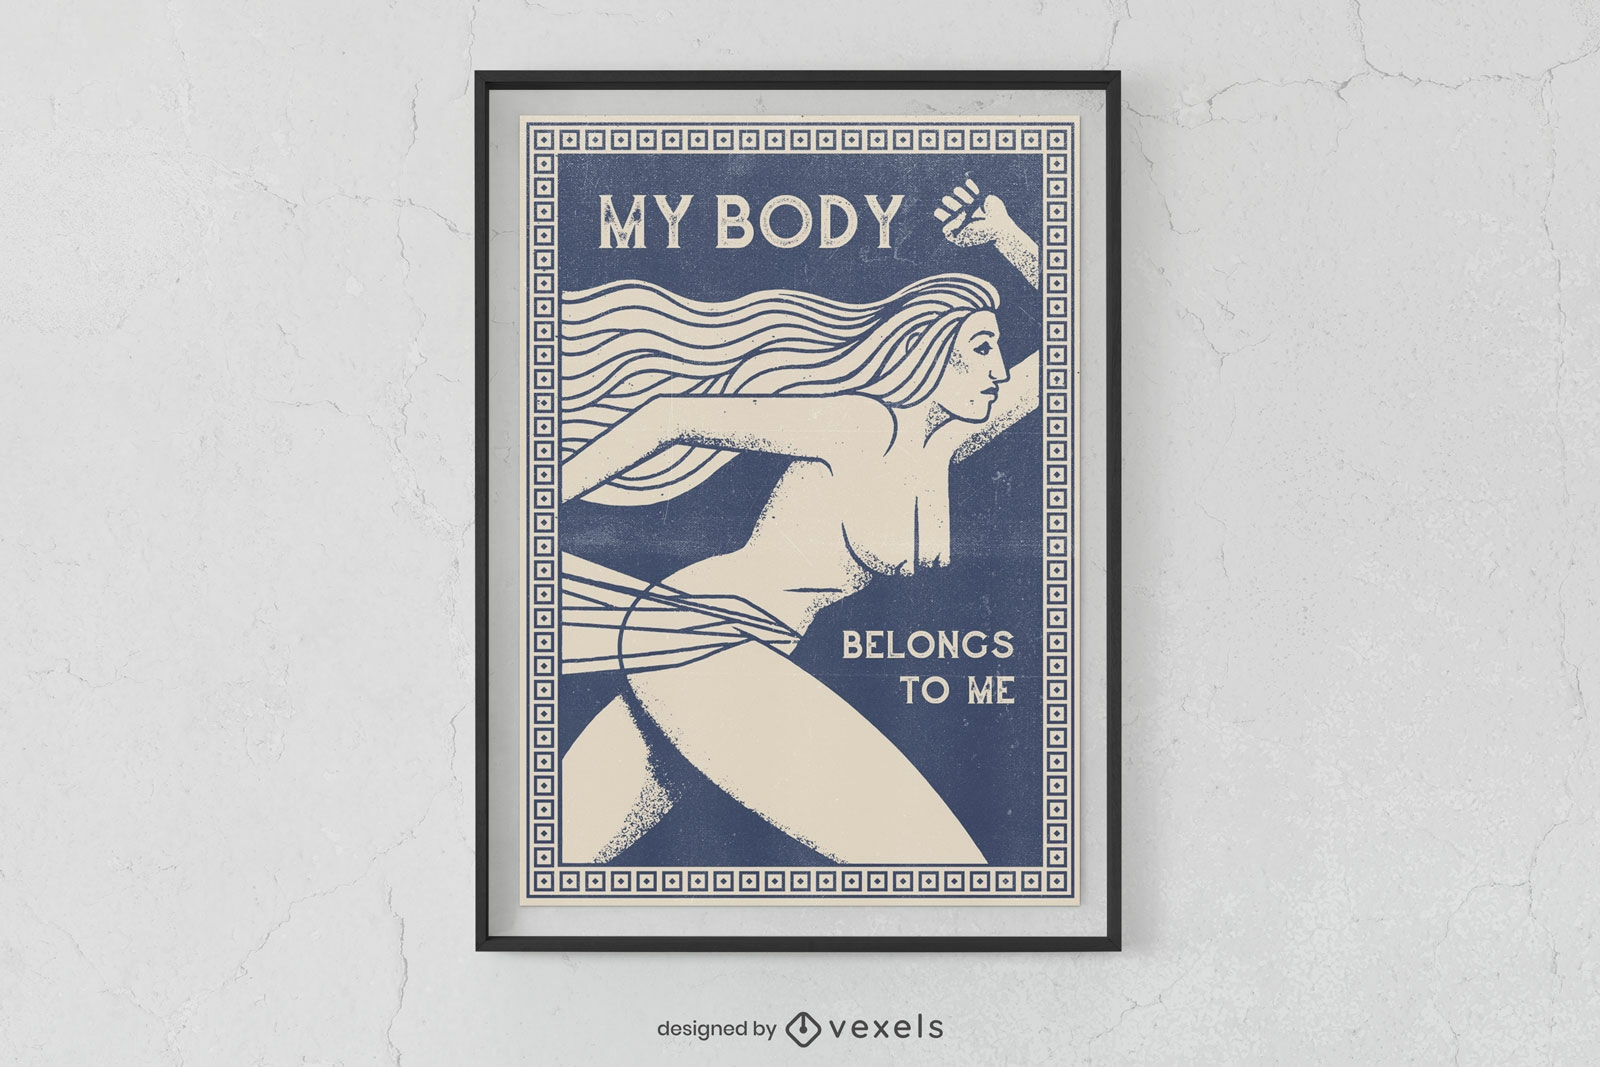 Diseño de cartel de autonomía corporal de mujer.